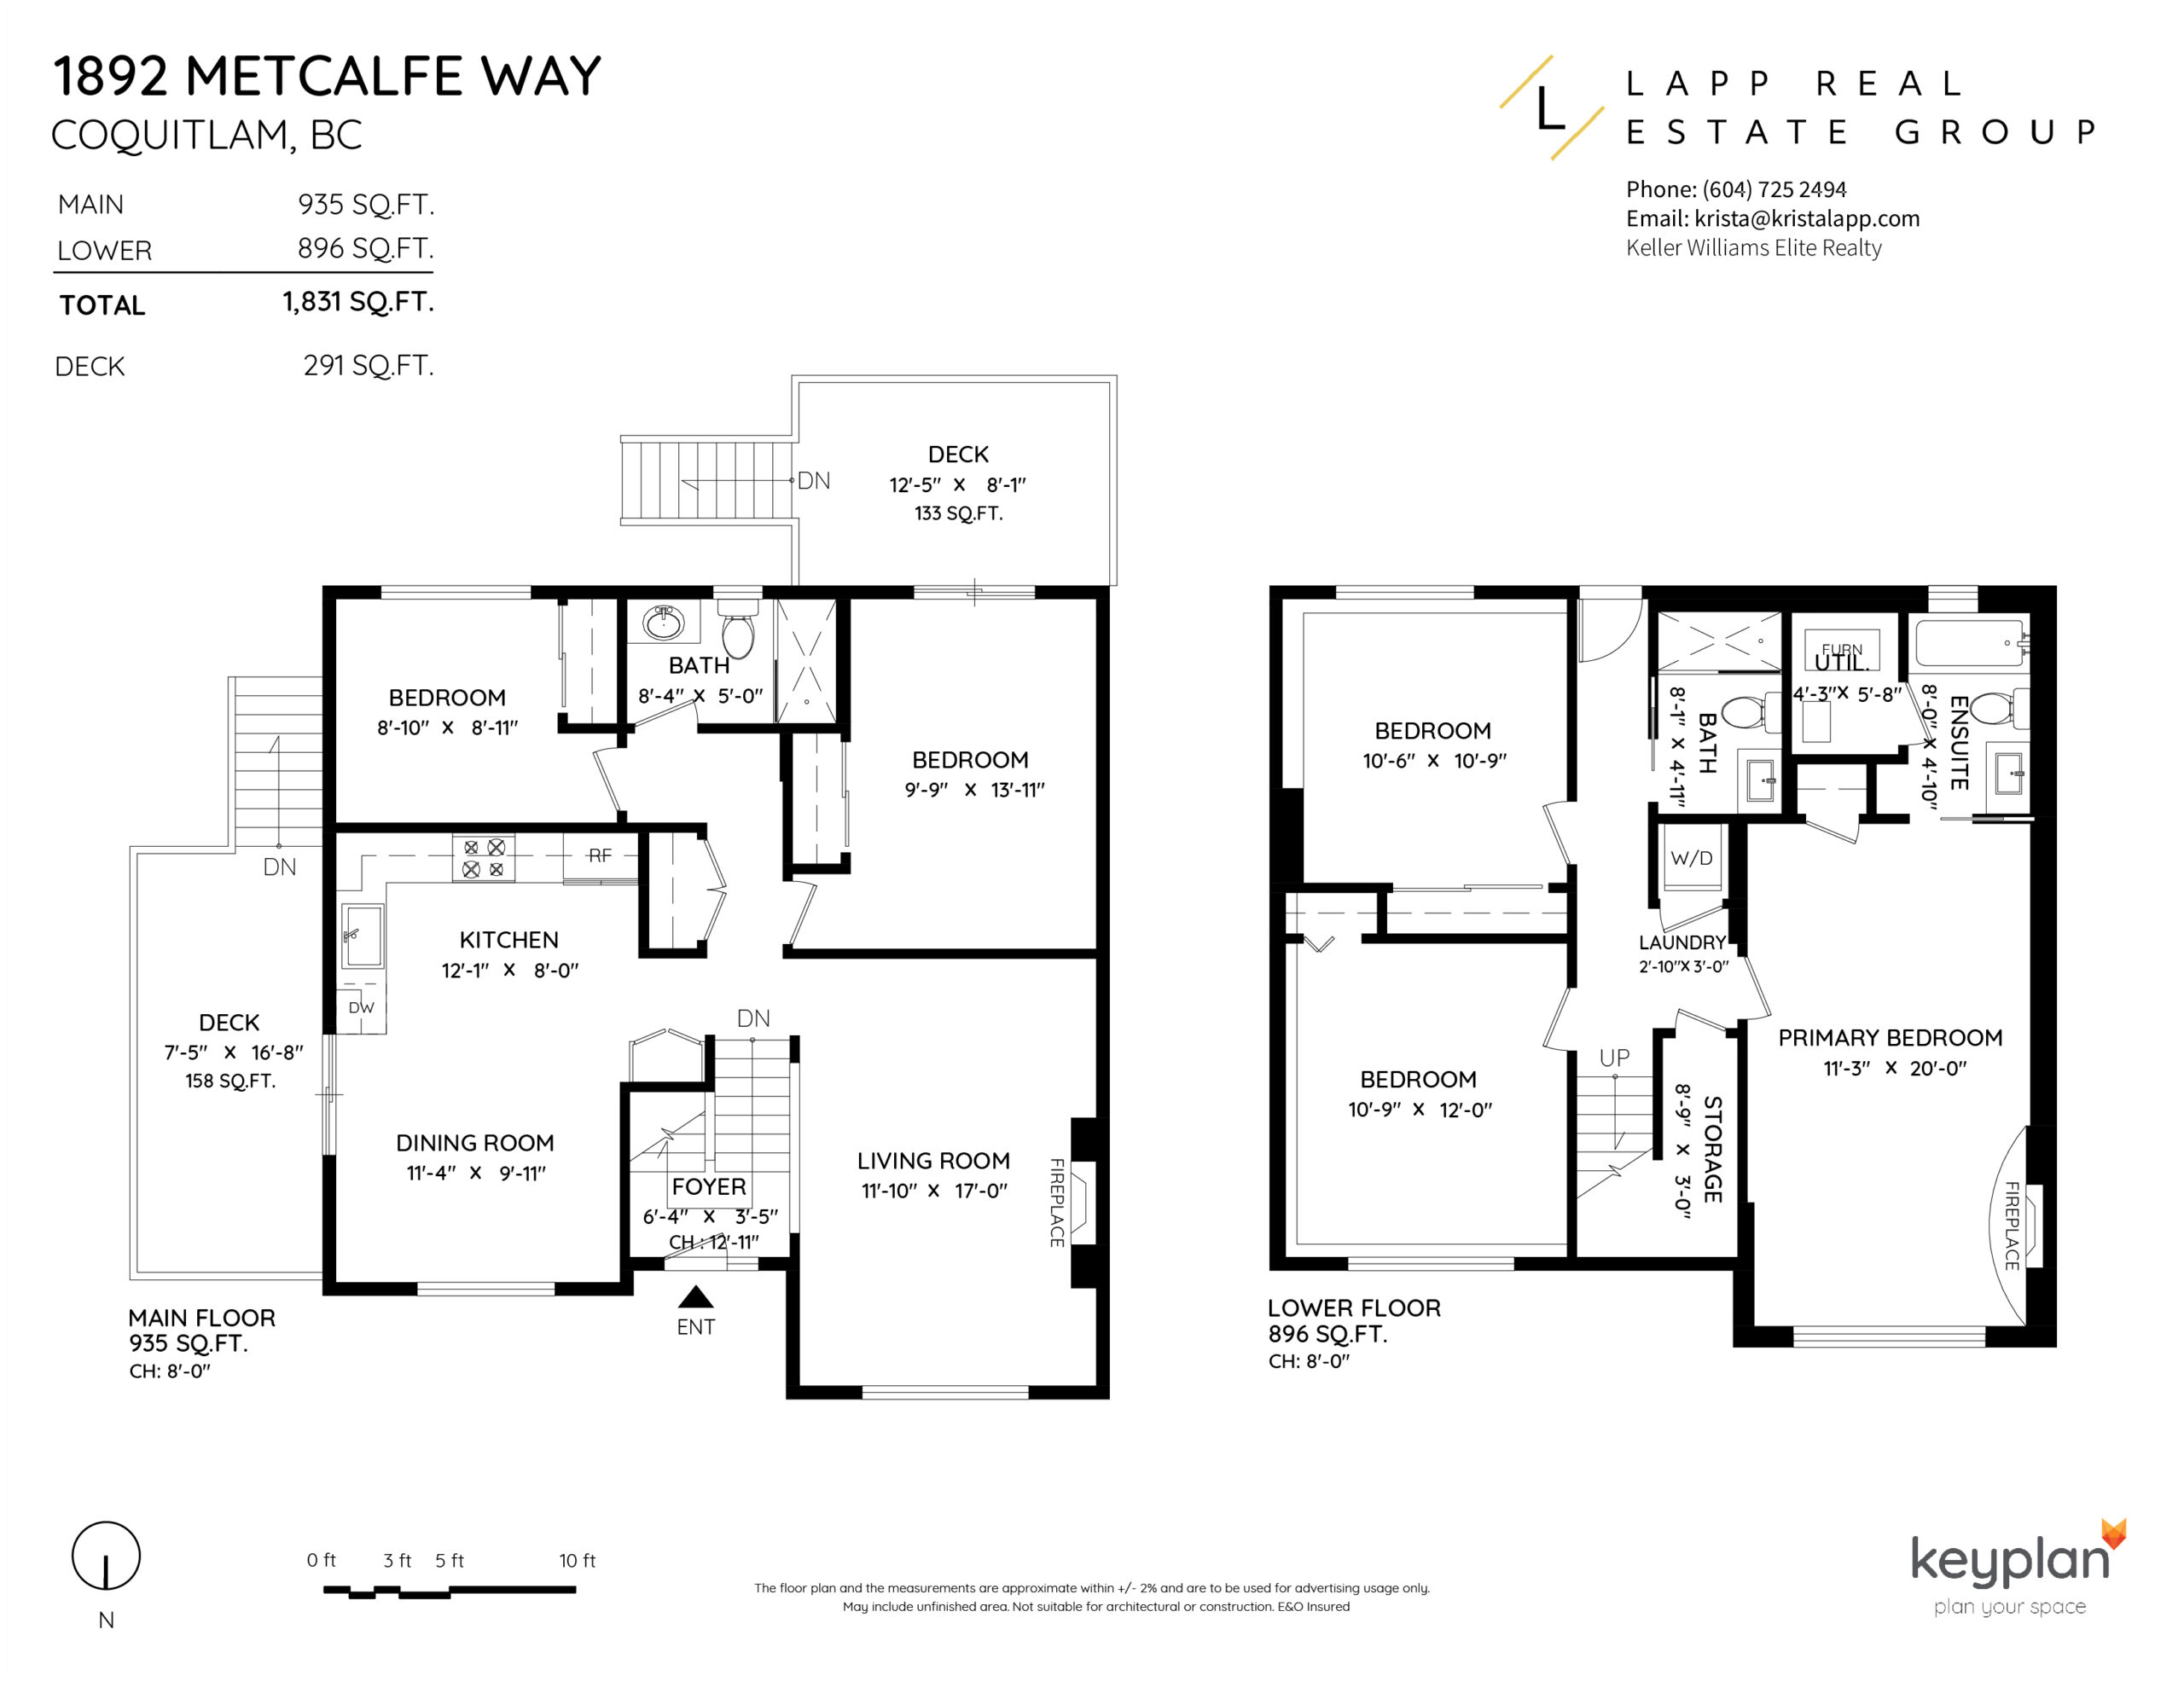 Krista Lapp 1892 Metcalfe Way Coquitlam Layout Floor Plan